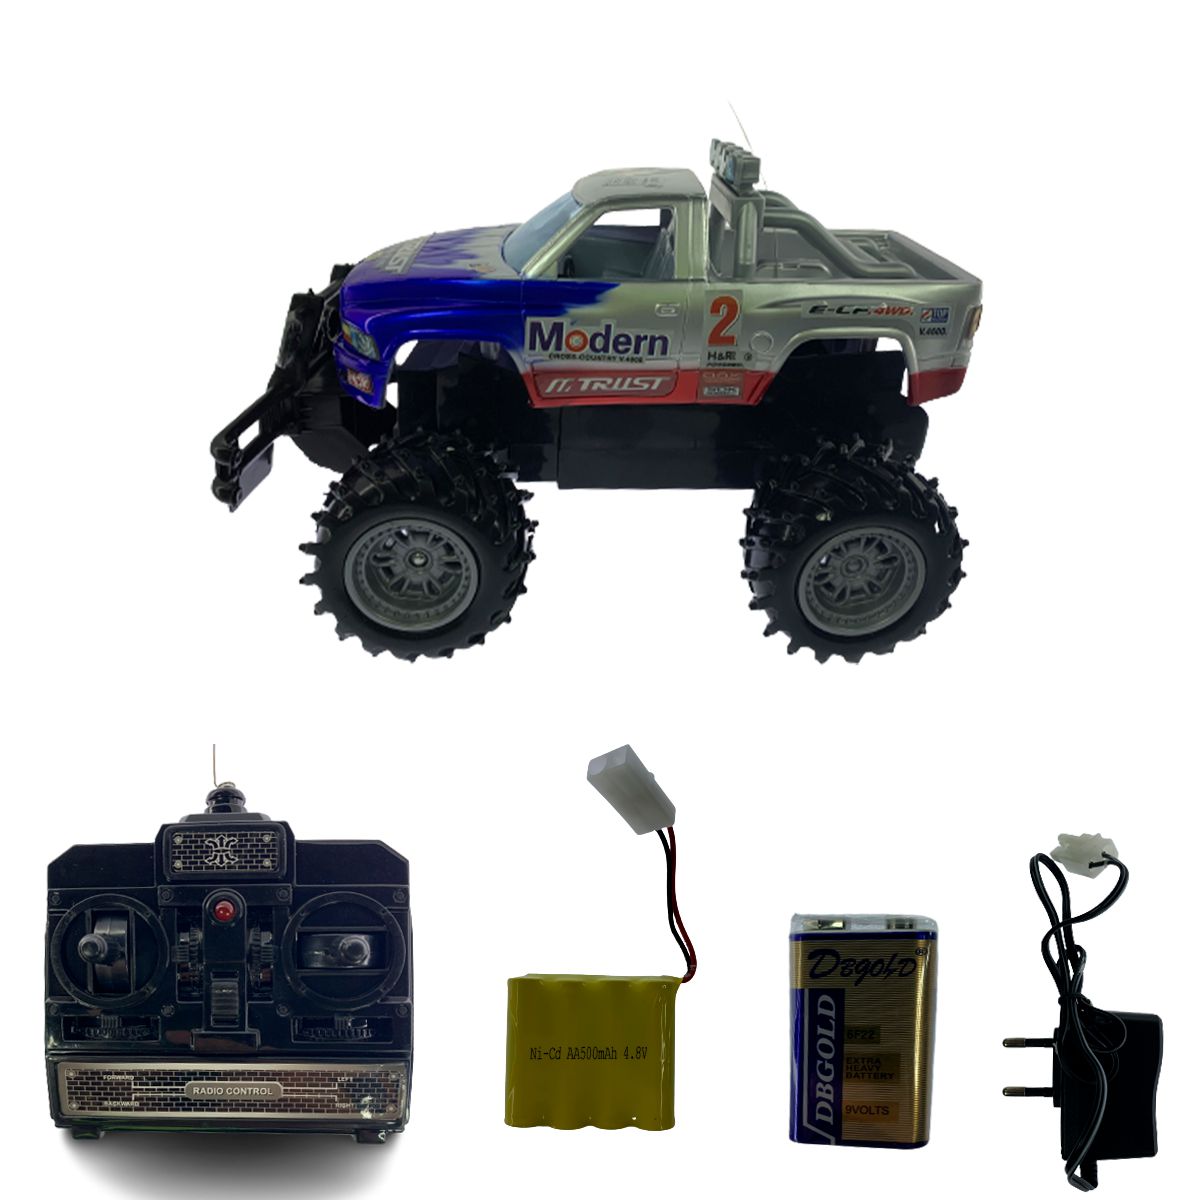 Monster truck de controle remoto: Ofertas com os Menores Preços no